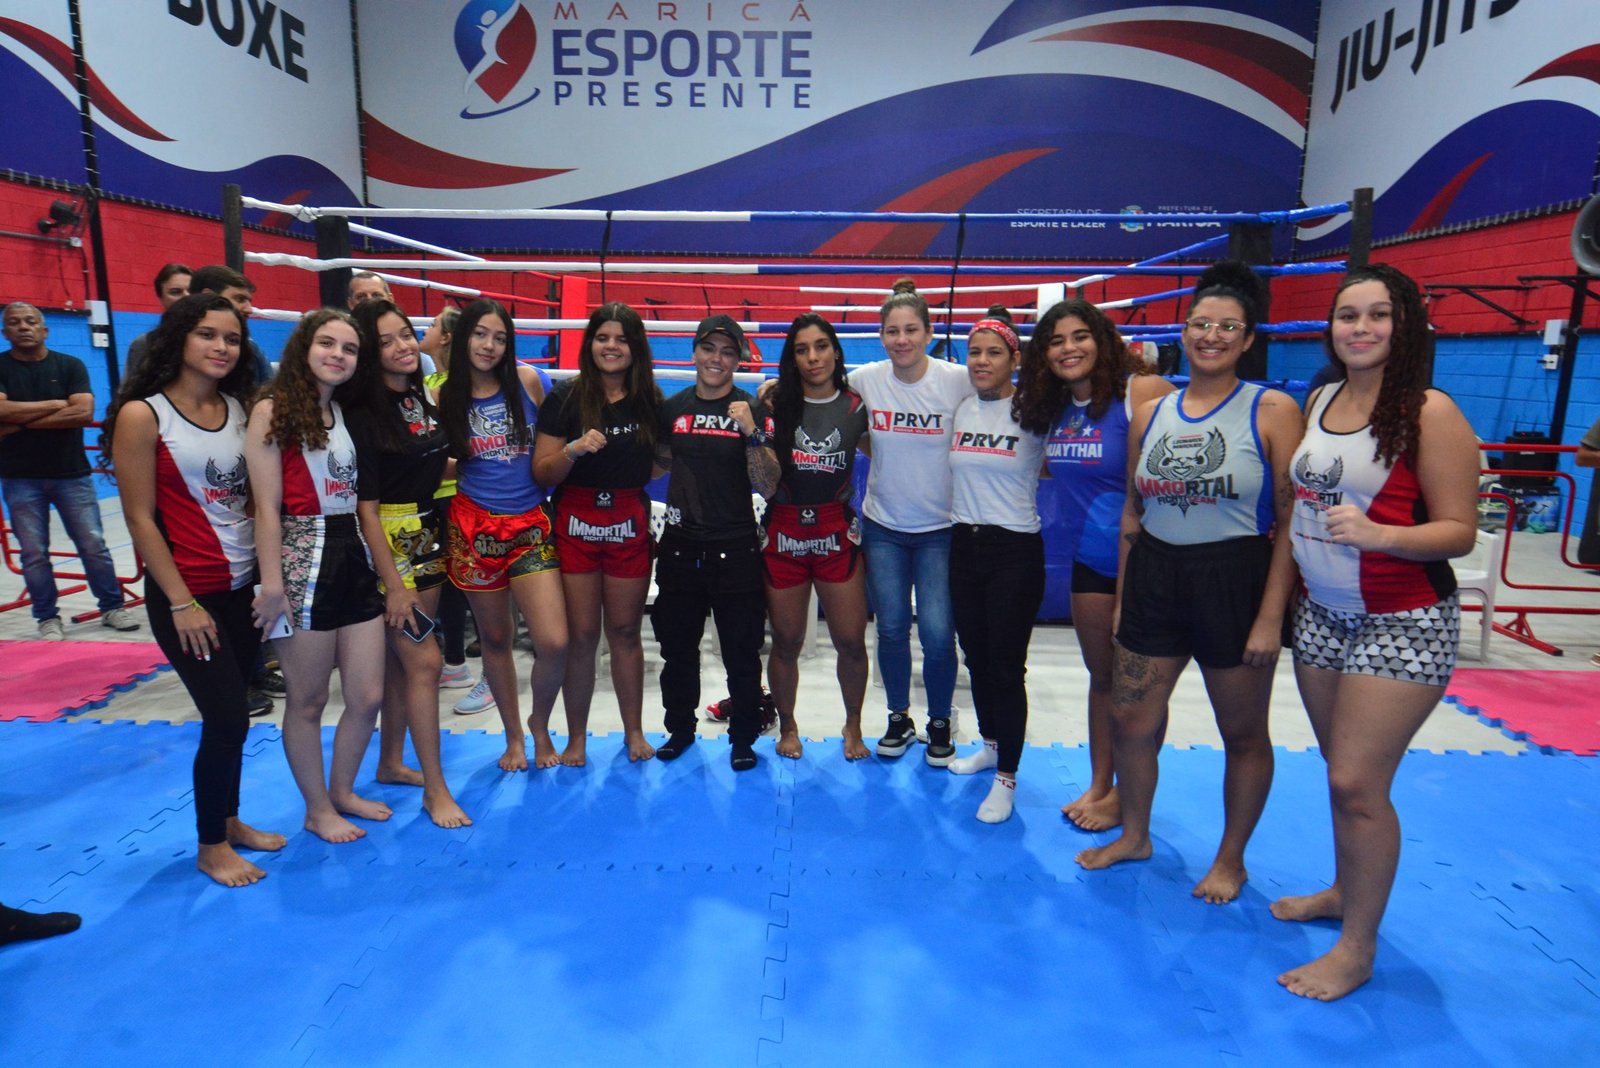 Maricá promove projeto “Ao Lado do Ídolo” e encontro com atletas de luta